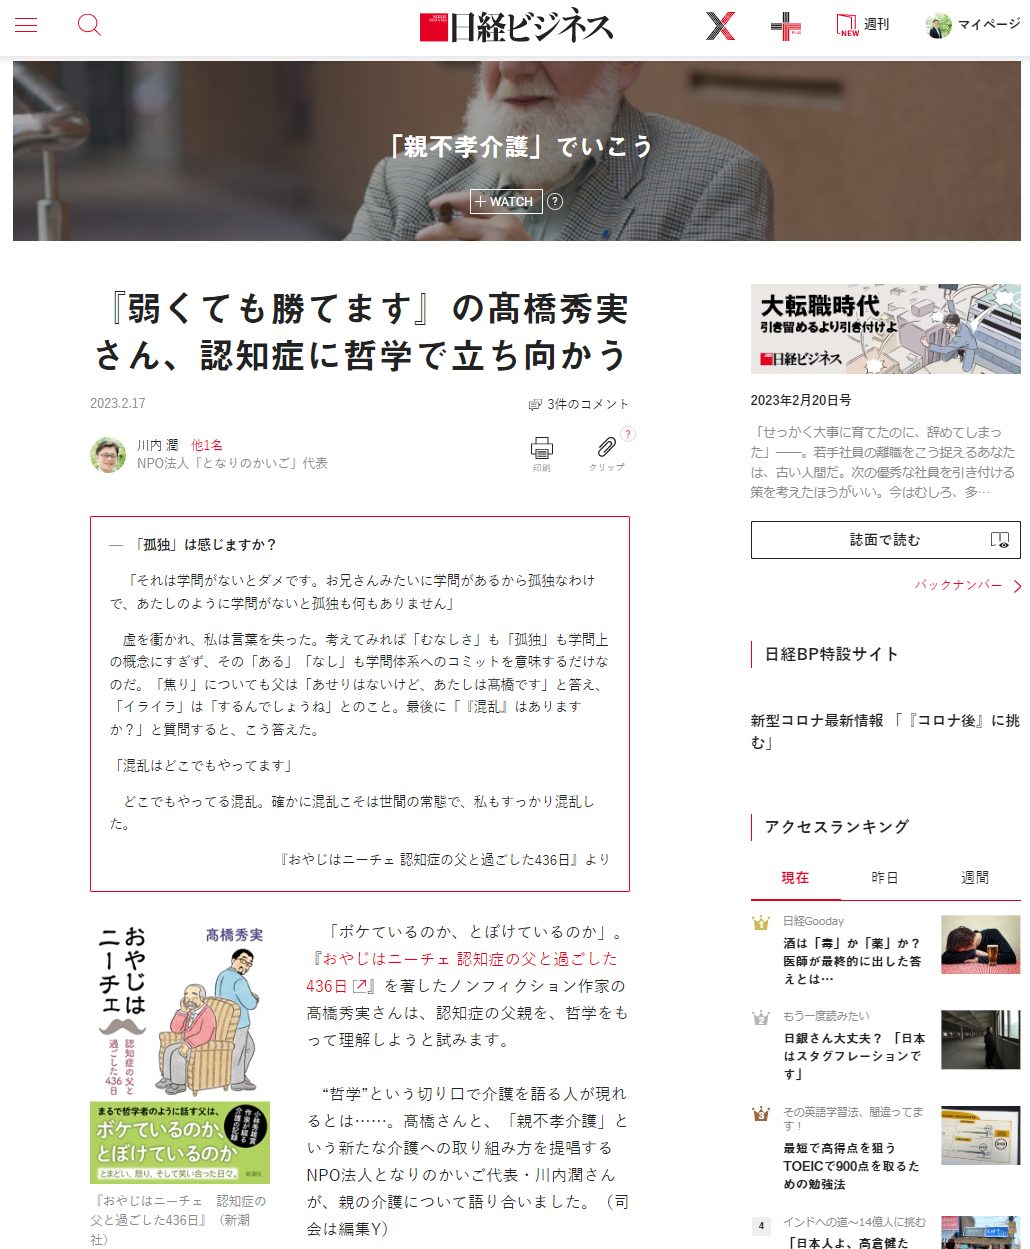 日経ビジネス 対談記事『『弱くても勝てます』の髙橋秀実さん、認知症に哲学で立ち向かう』